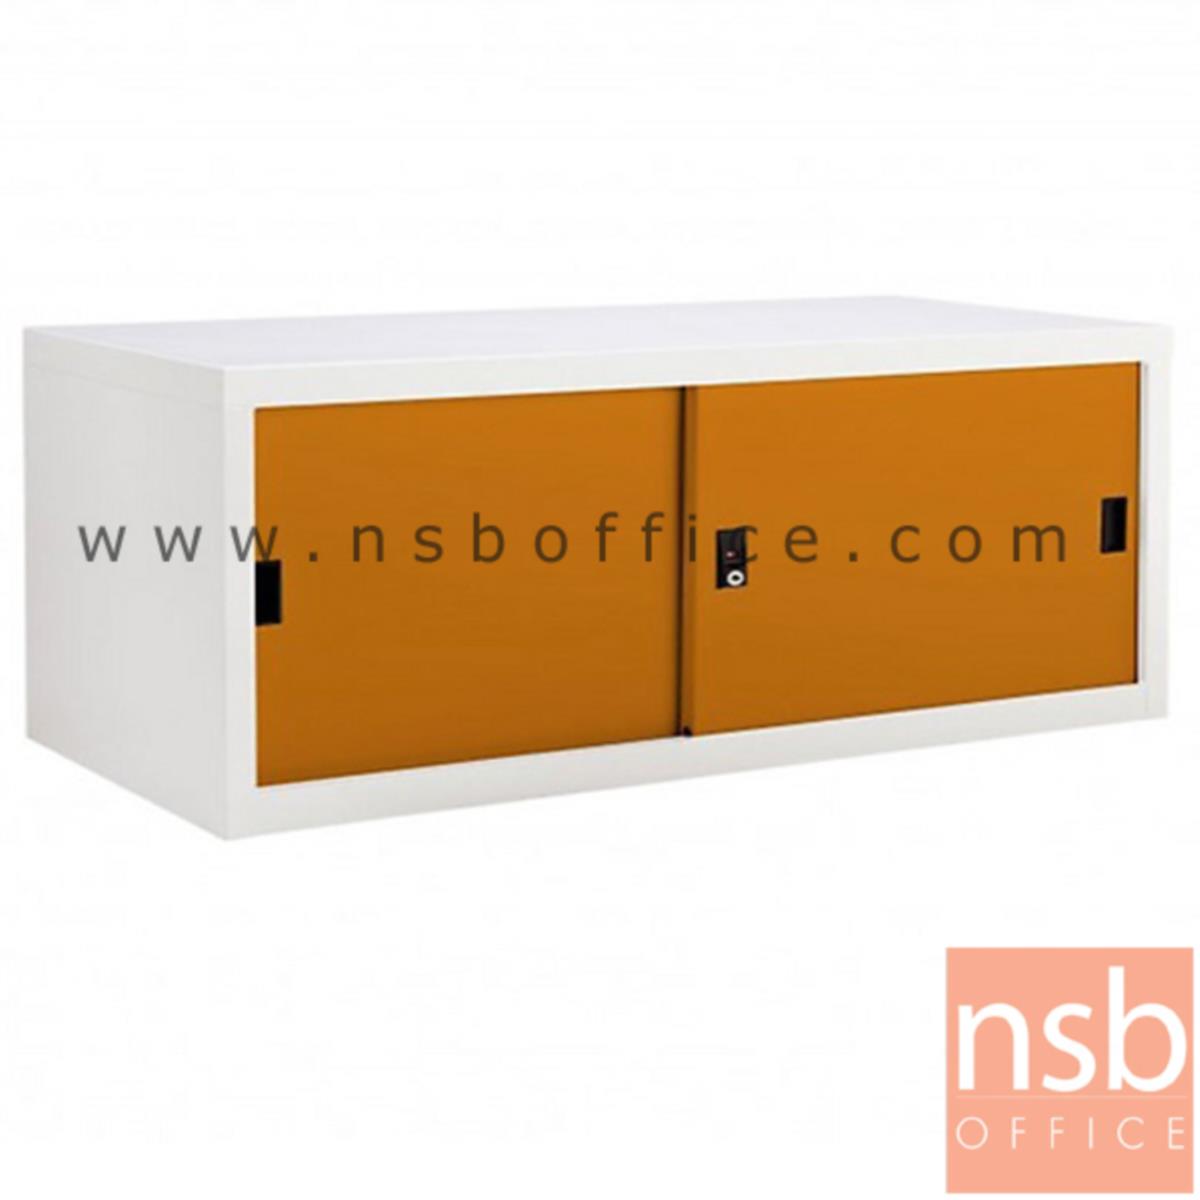 ตู้เหล็กบานเลื่อนทึบเตี้ย 3 ฟุต หน้าสีสัน สีขาวครีม 88W*40.7D*44H cm รุ่น USB-1   